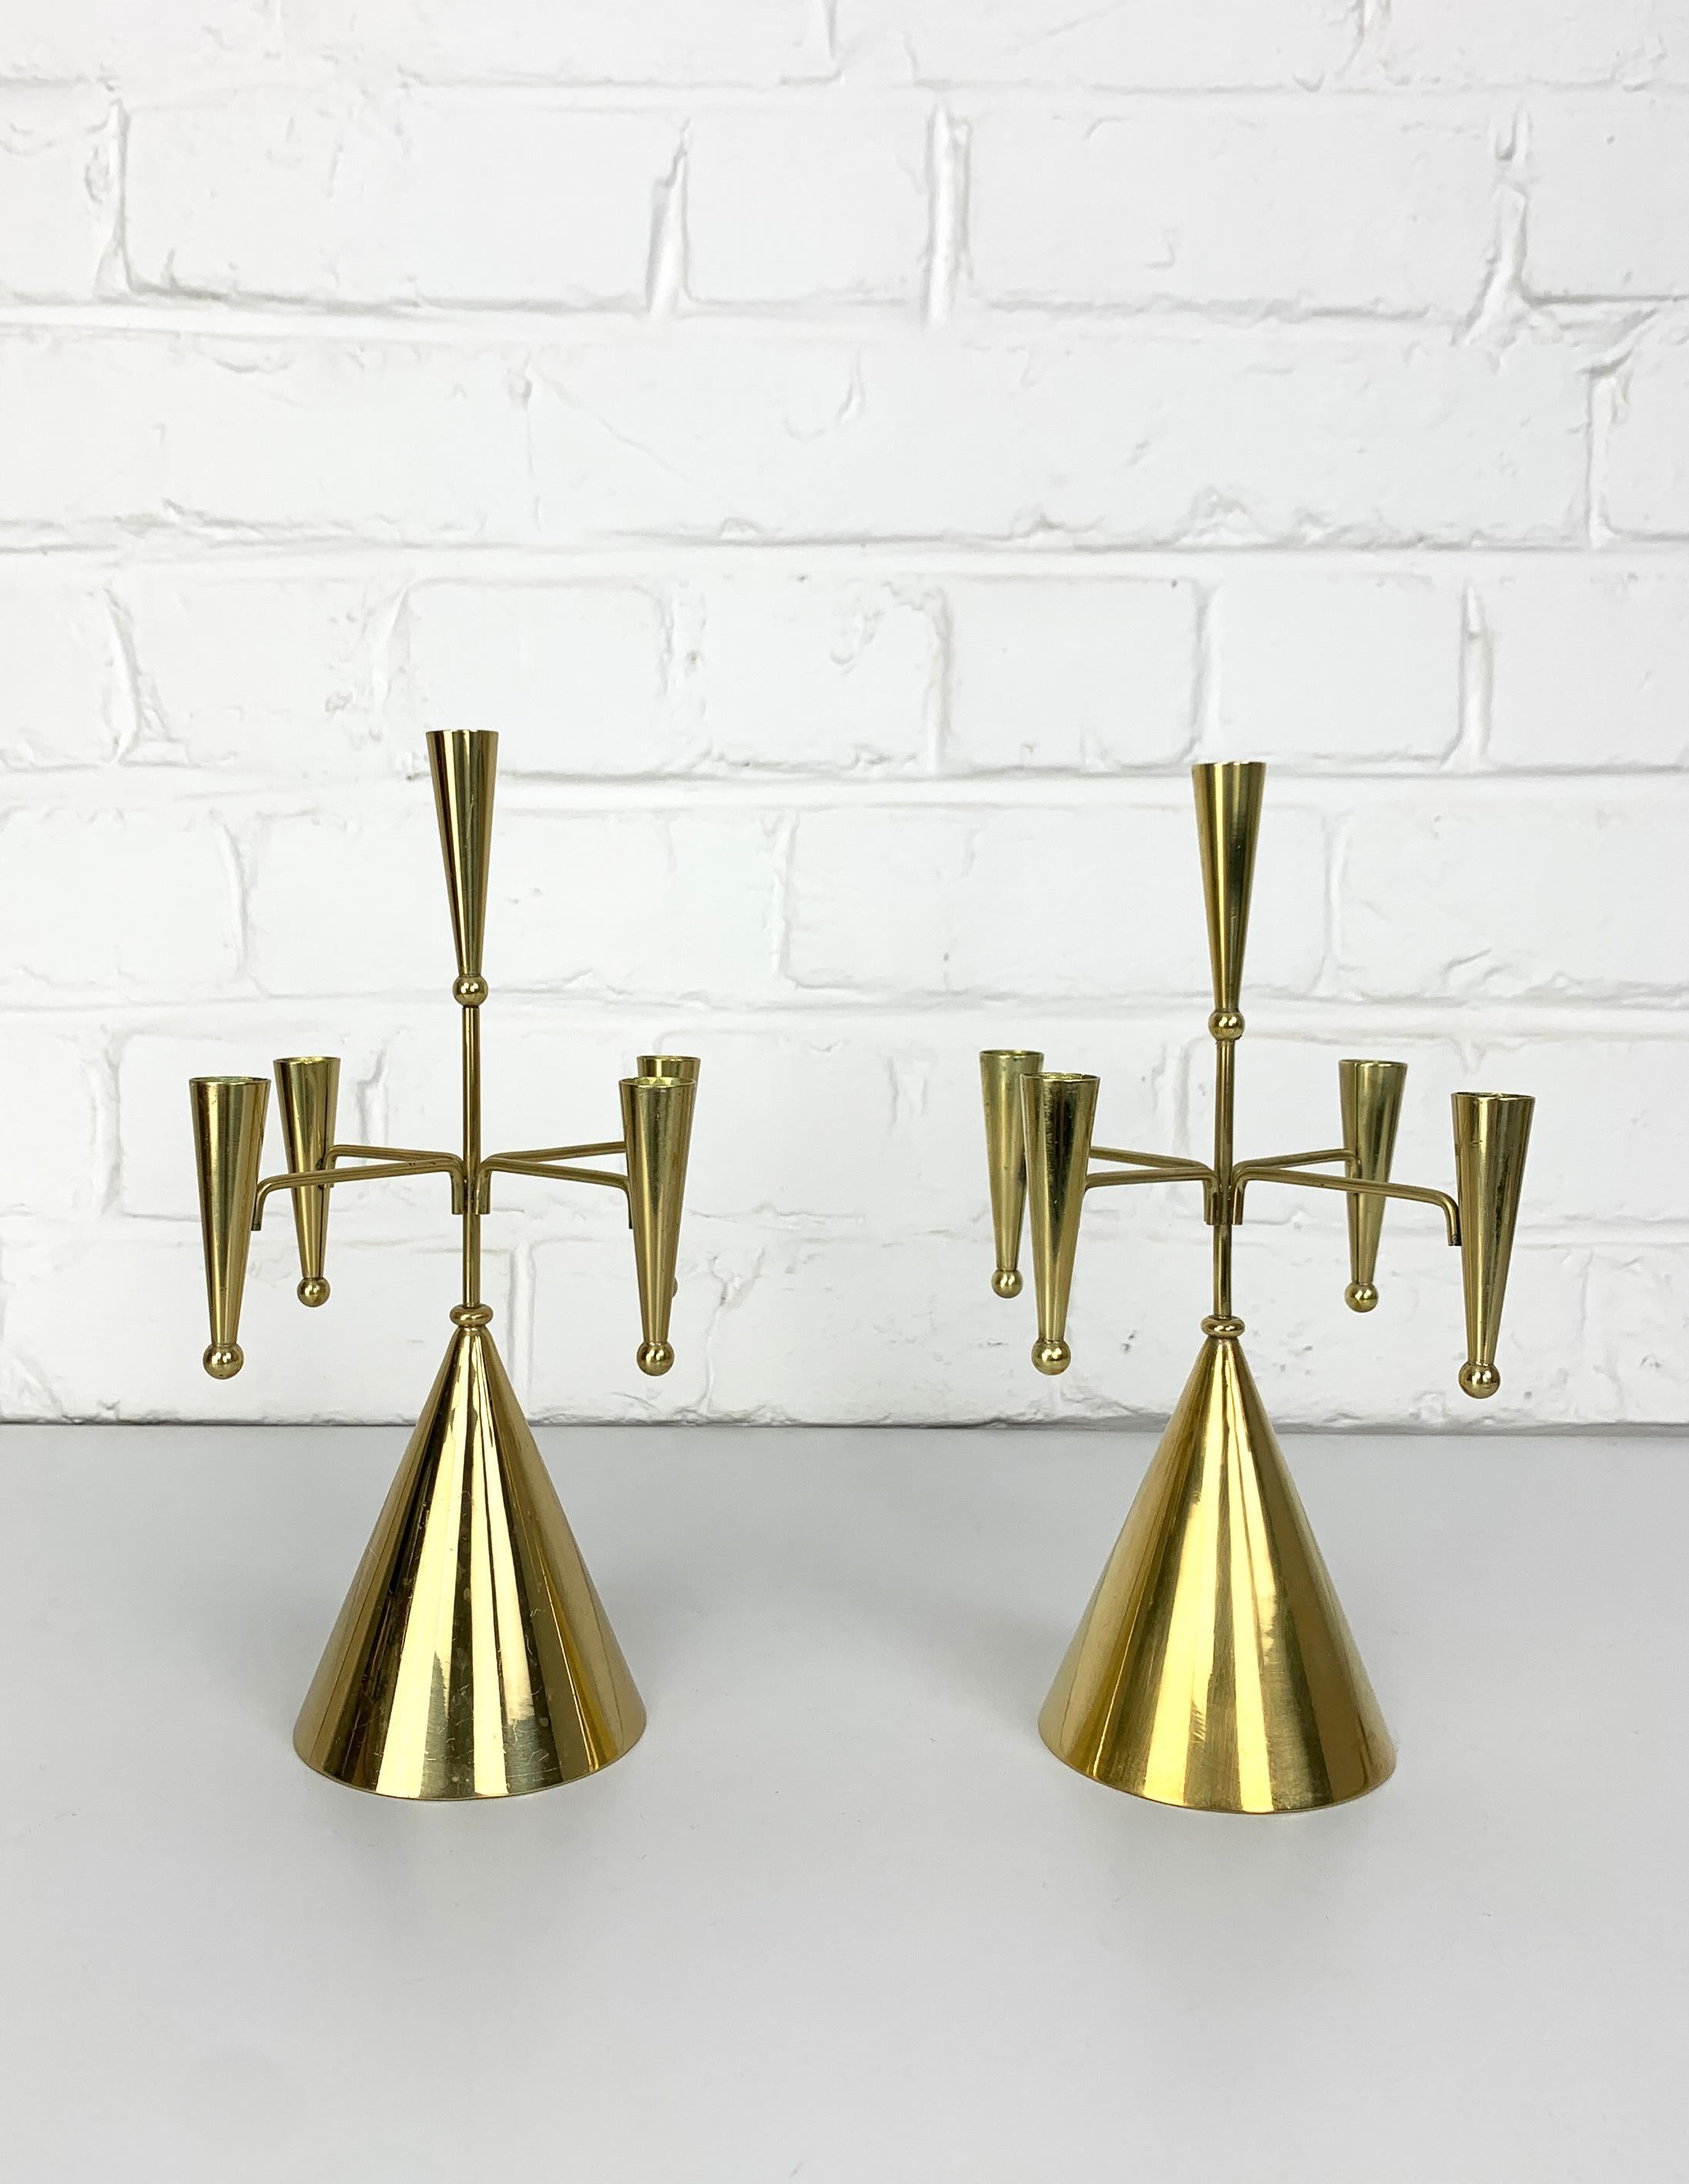 Paire de bougeoirs modernistes suédois pour 5 bougies a été conçue par Gunnar Ander. Produit par Ystad-Metall, situé dans la ville d'Ystad en Suède. 

Entièrement réalisé en laiton, ce design ludique est basé sur des cônes et des sphères assemblés